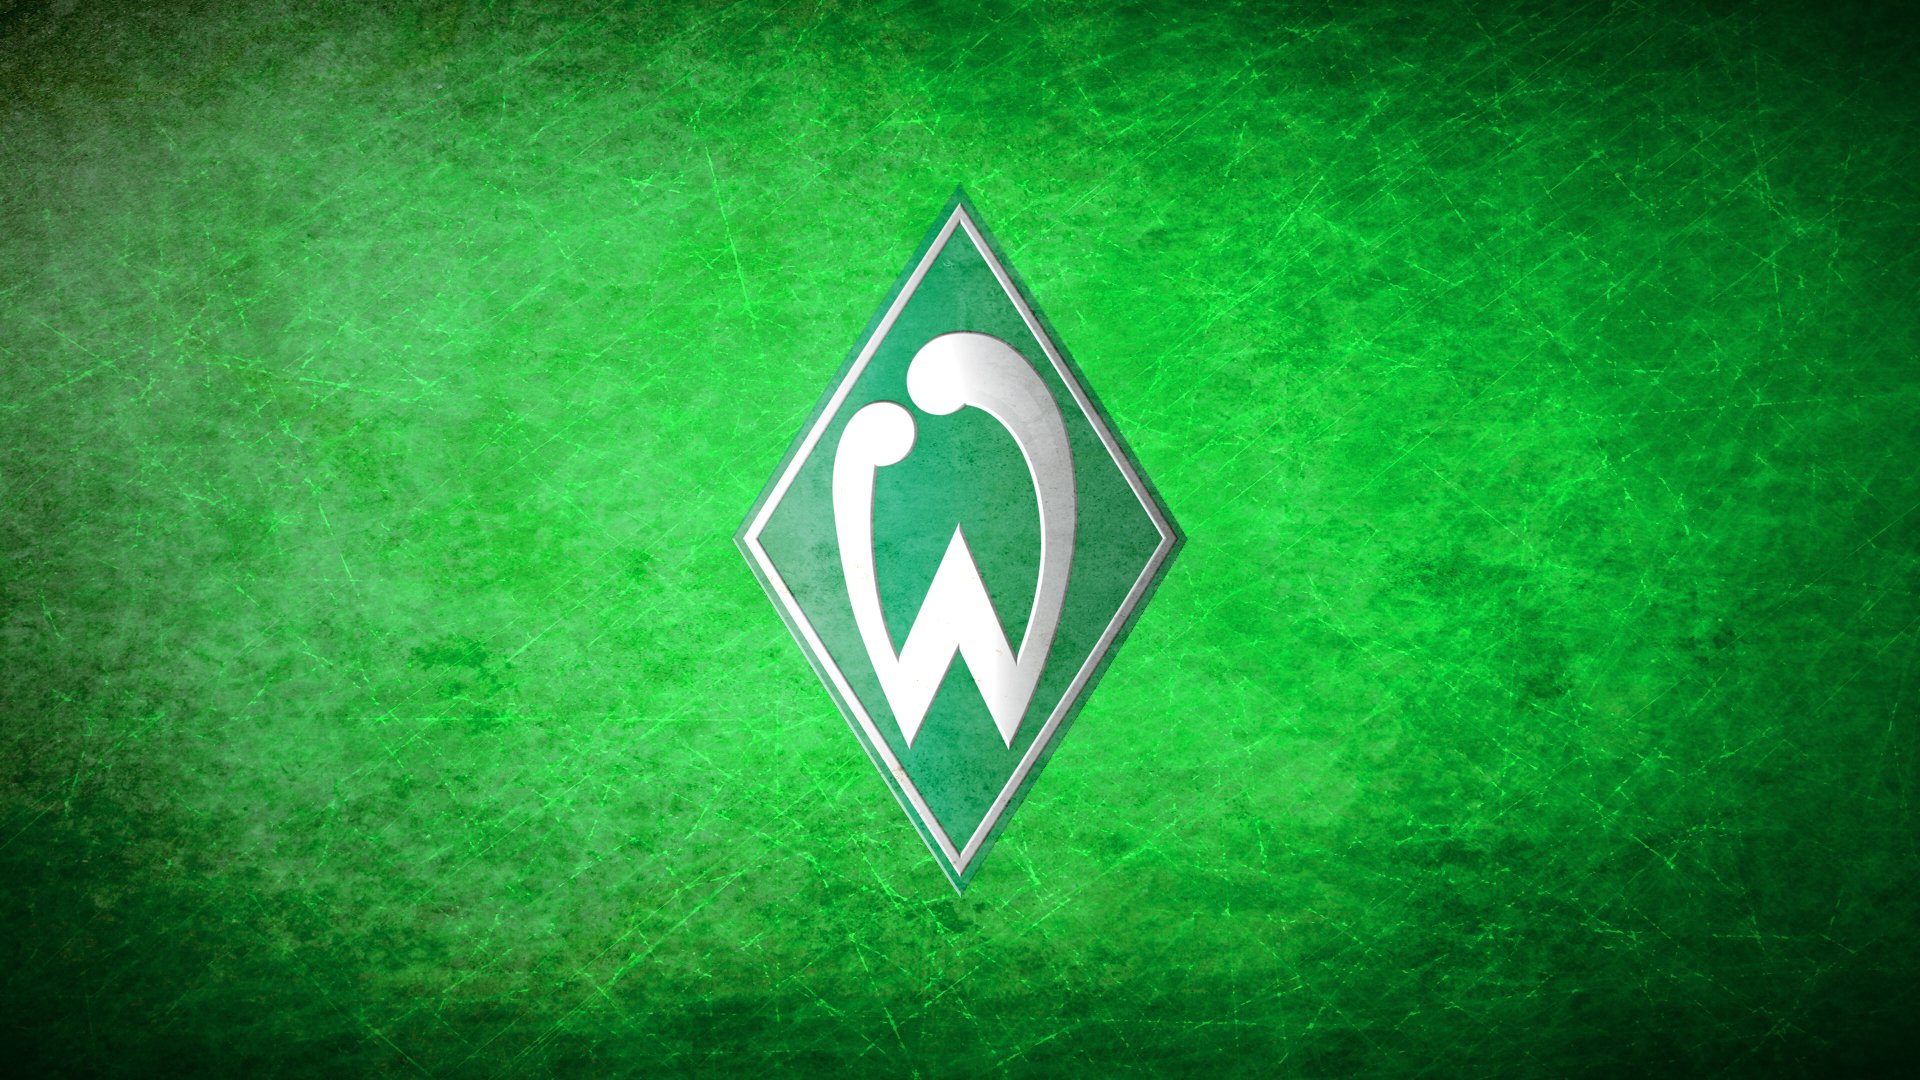 SV Werder Bremen HD Wallpaper - Background Image - 1920x1080 - ID ...